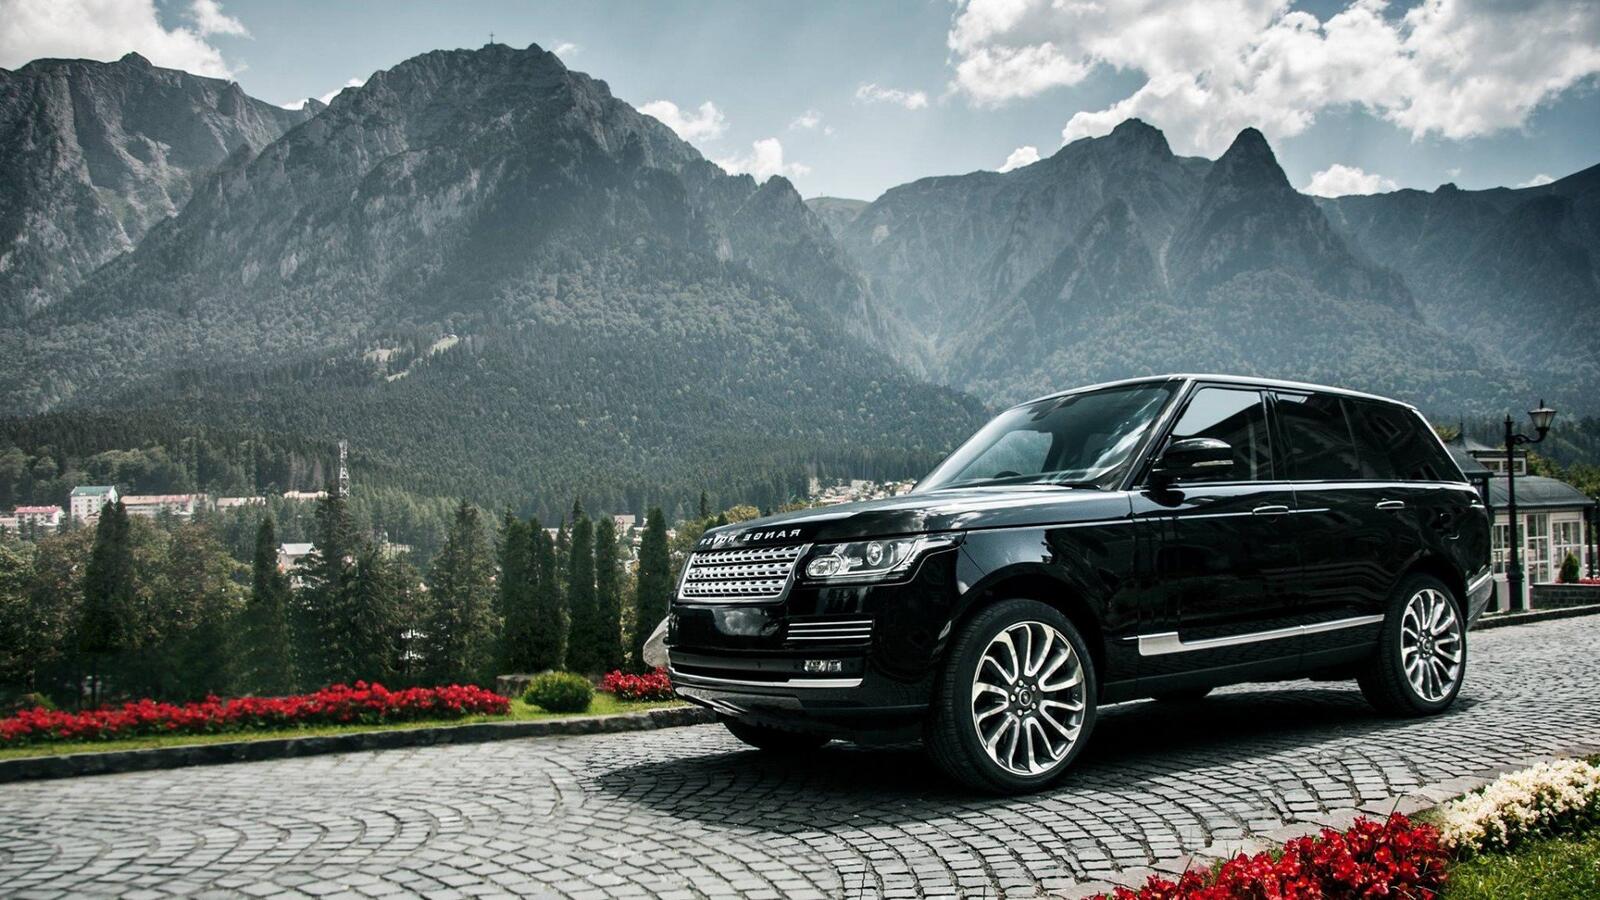 Бесплатное фото Черный Range Rover на фоне гор